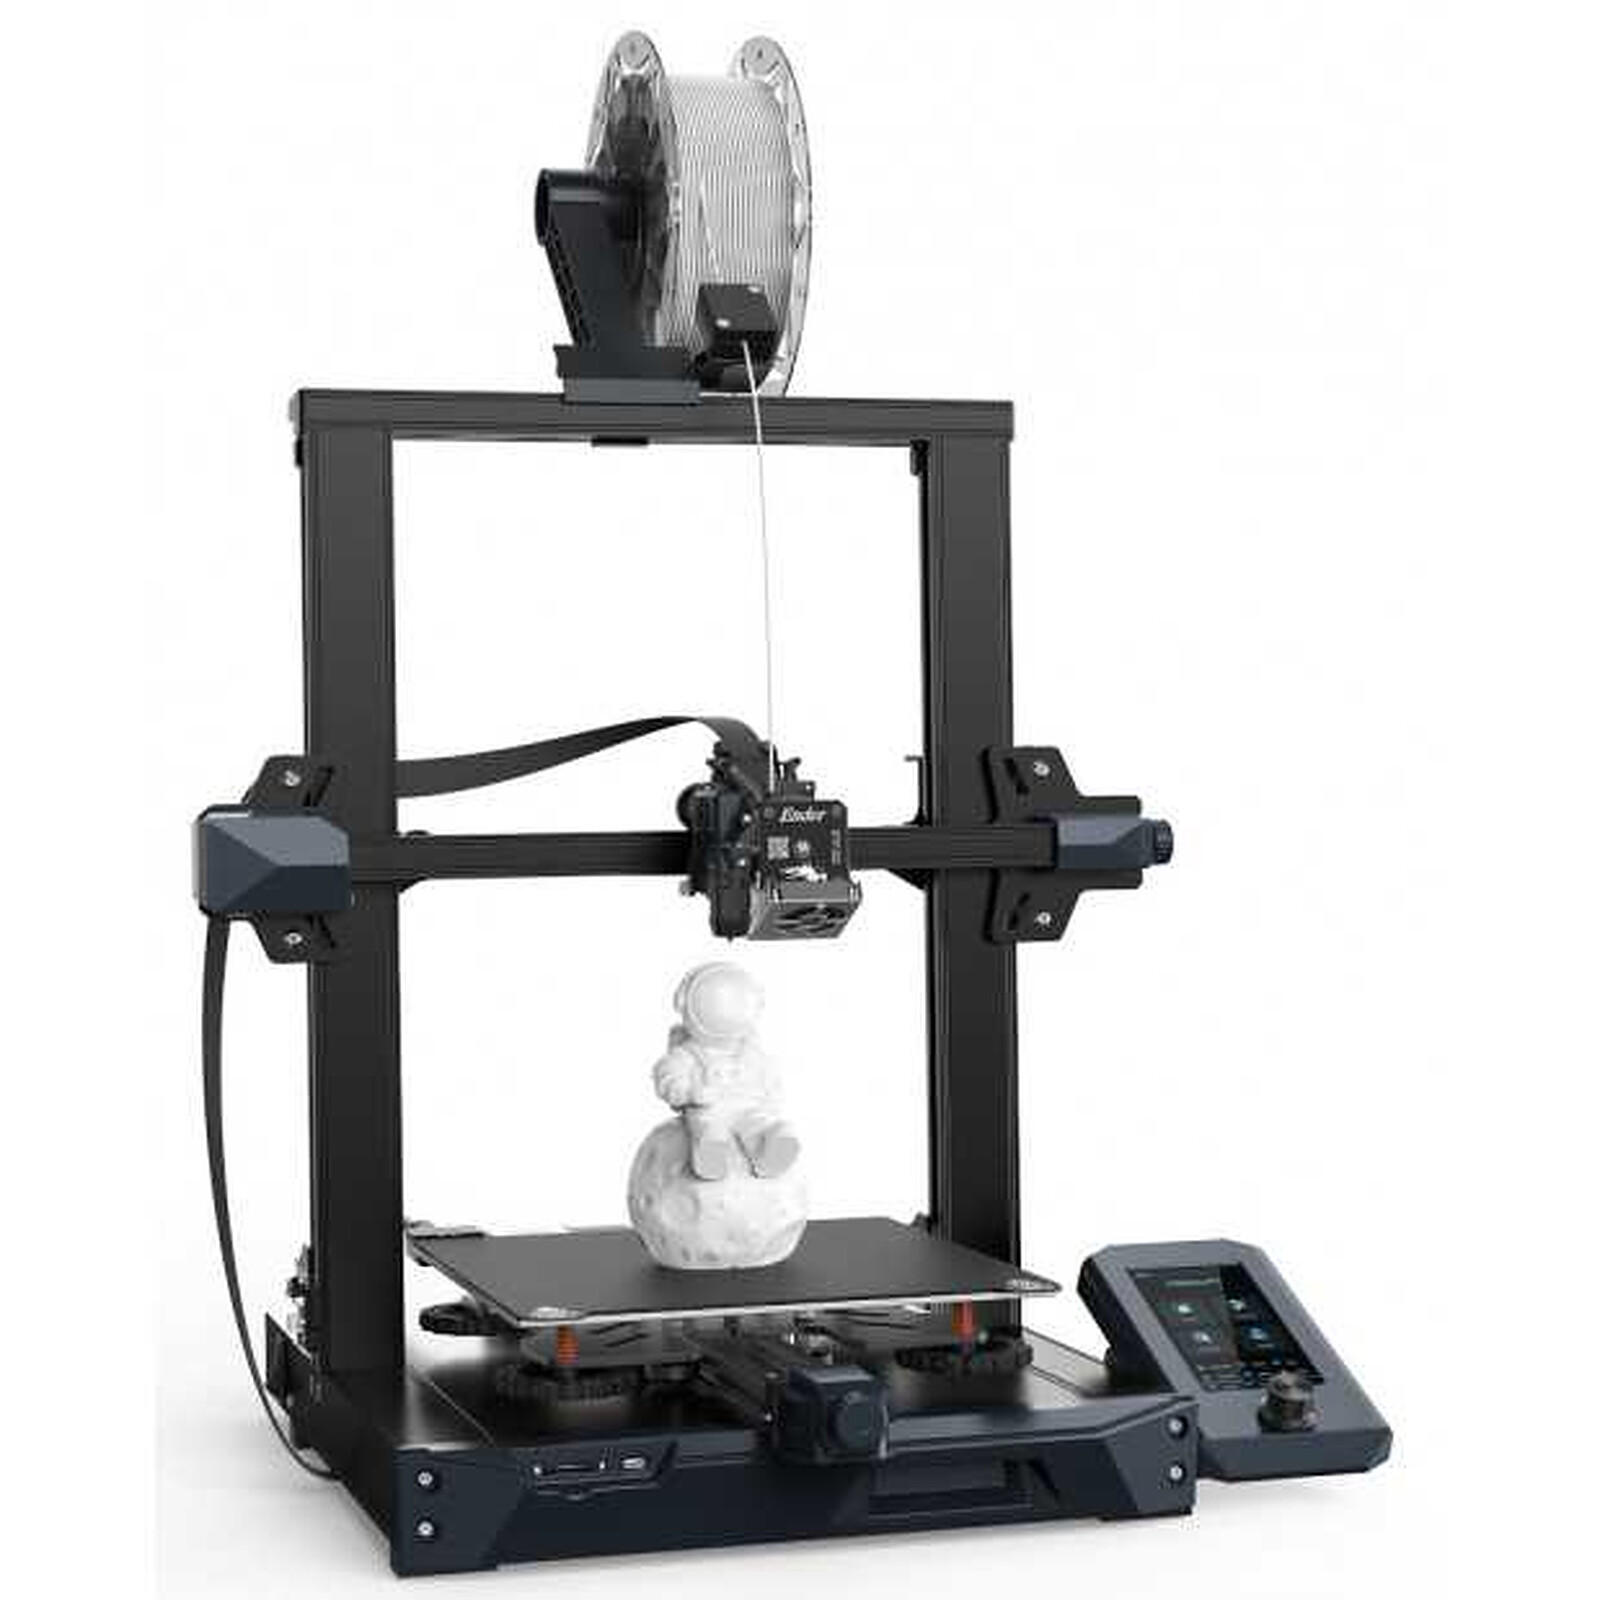 🖨️ Meilleurs fichiers STL pour imprimer son imprimante 3D — 27